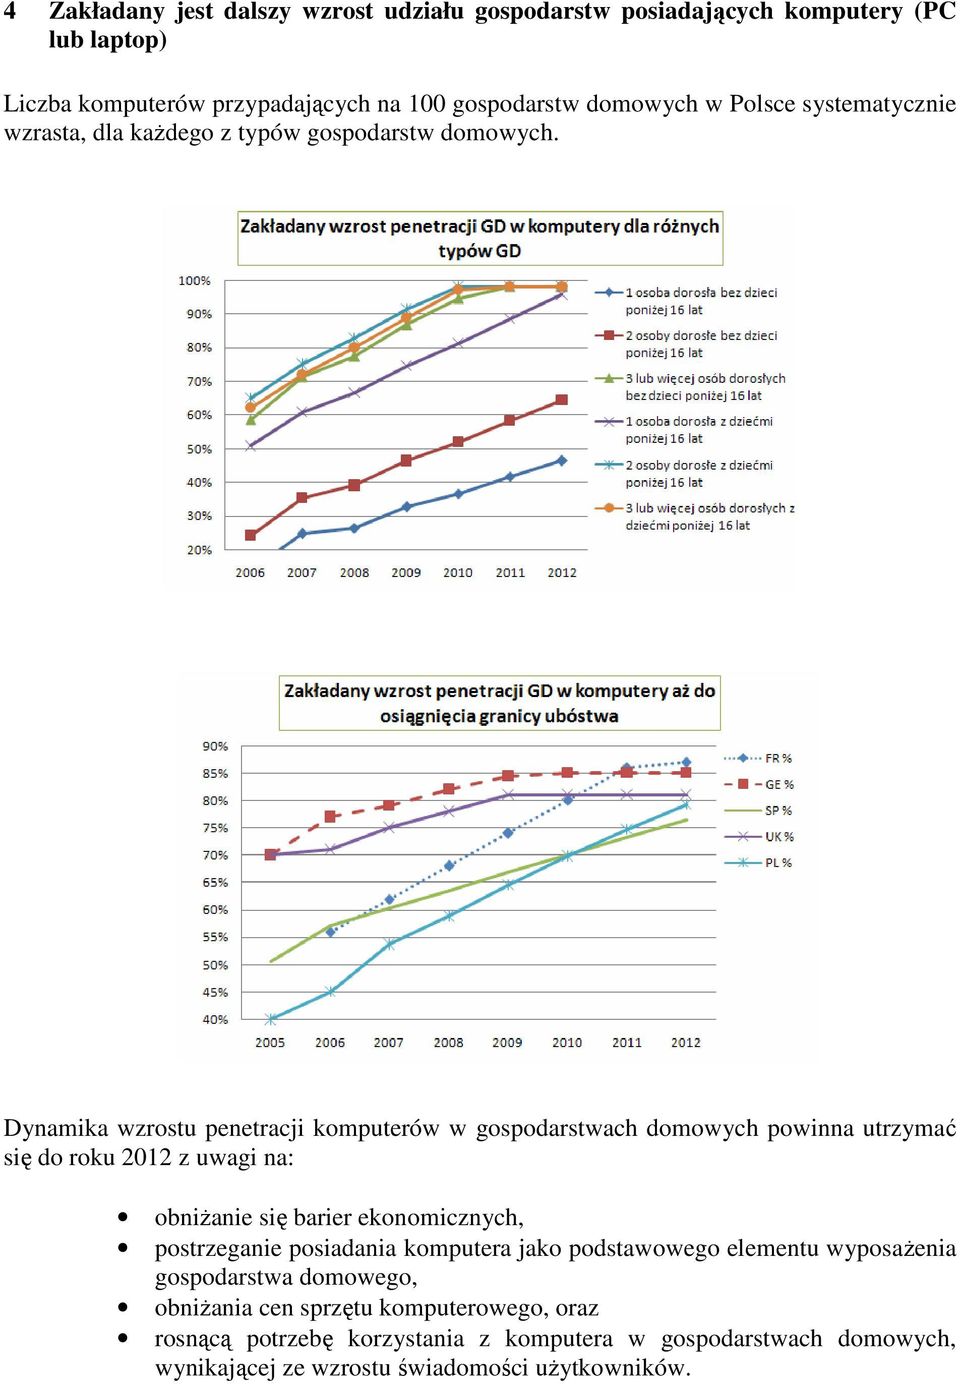 Dynamika wzrostu penetracji komputerów w gospodarstwach domowych powinna utrzymać się do roku 2012 z uwagi na: obniŝanie się barier ekonomicznych,